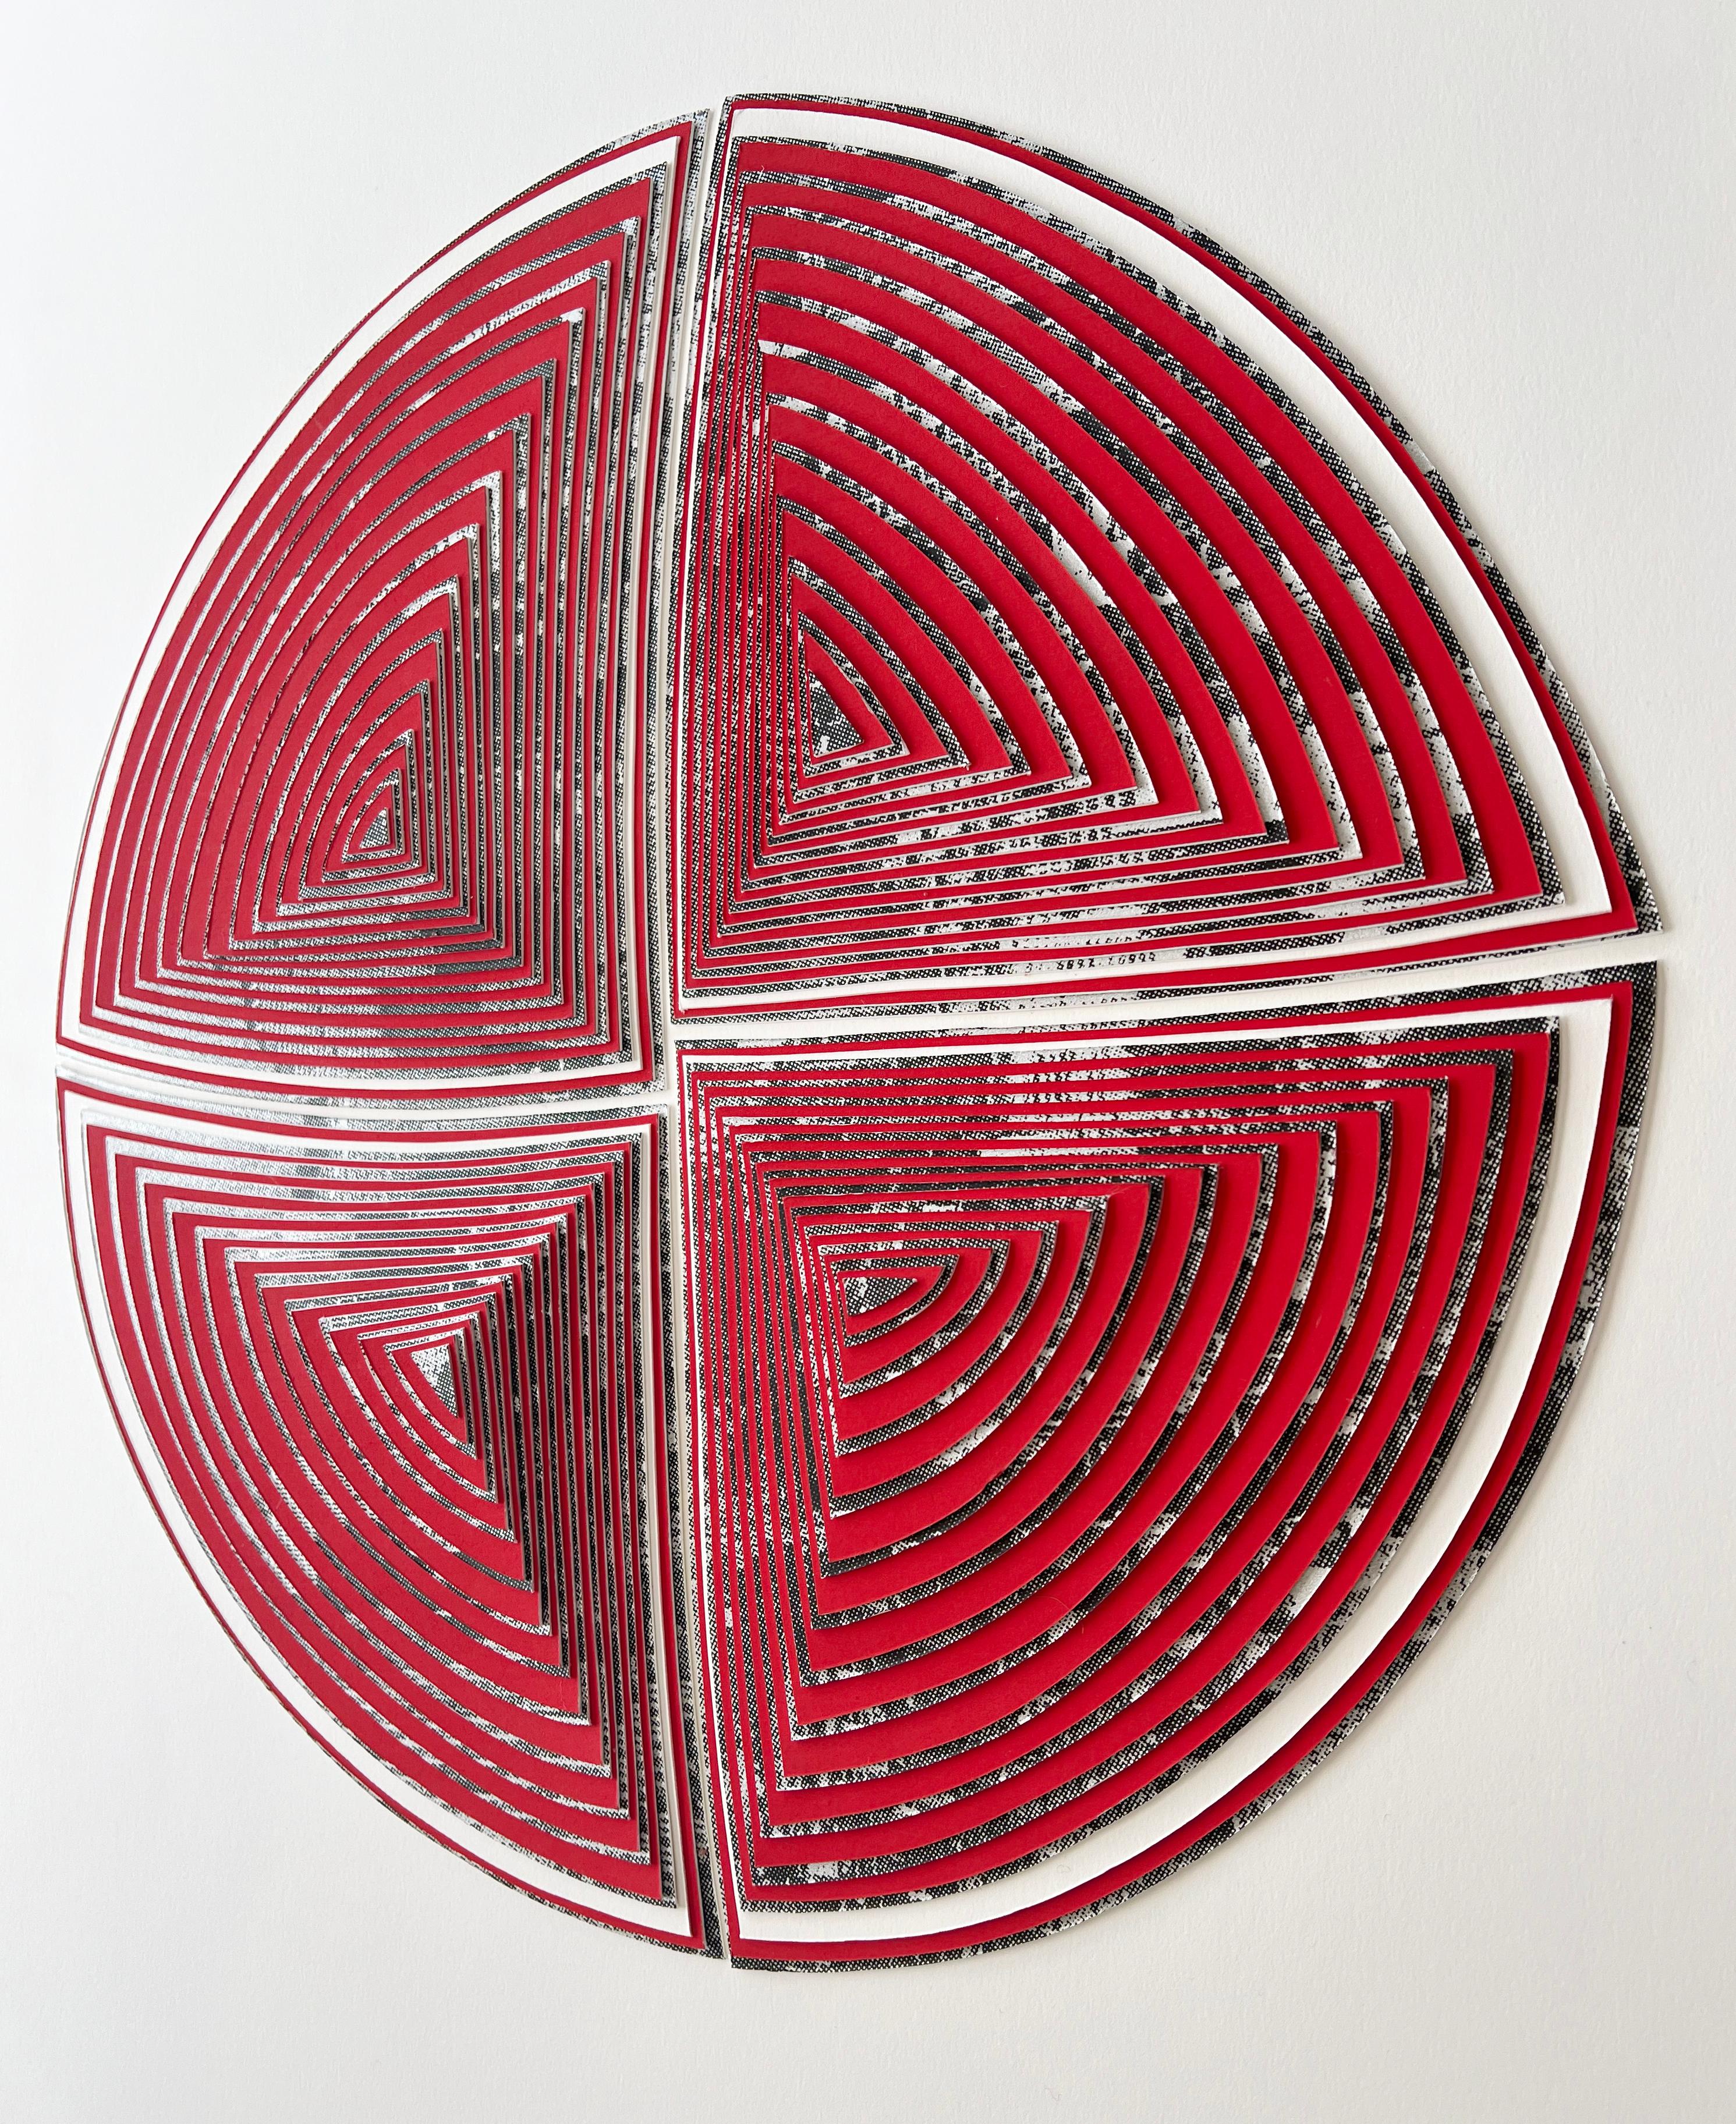 Freihand, Minimal, Cutwork: 'NYC in Red-Out' – Painting von Elizabeth Gregory-Gruen